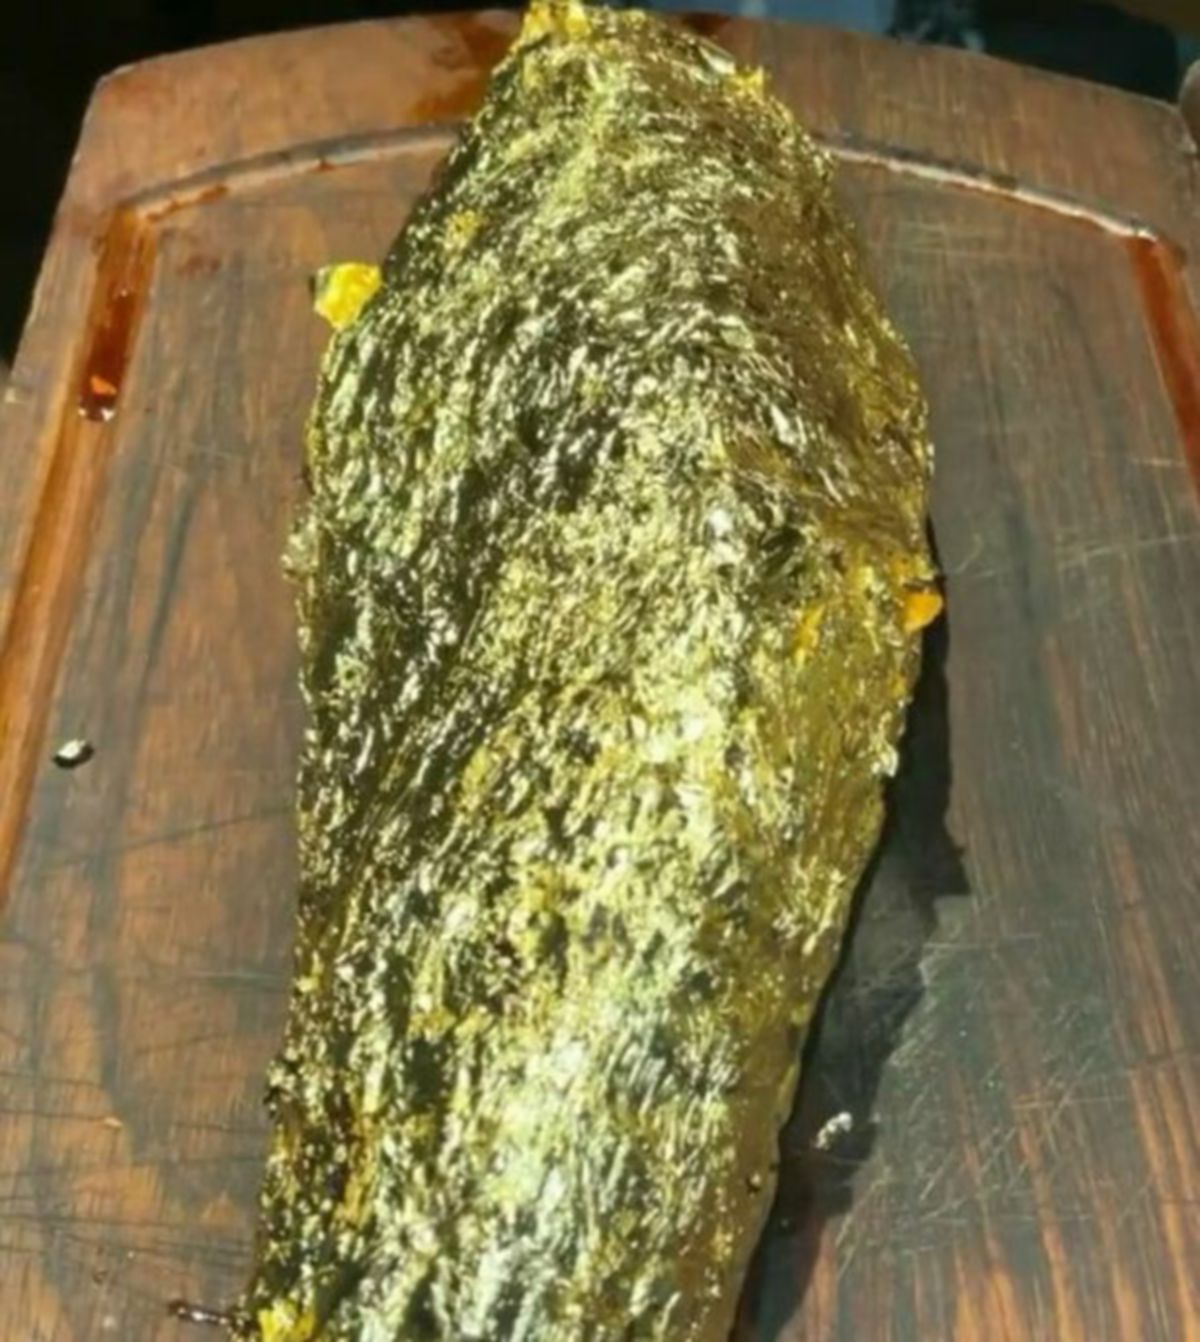 STIK bersalut emas 24 karat salah satu hidangan ada di restoran Salt Bae. FOTO Agensi